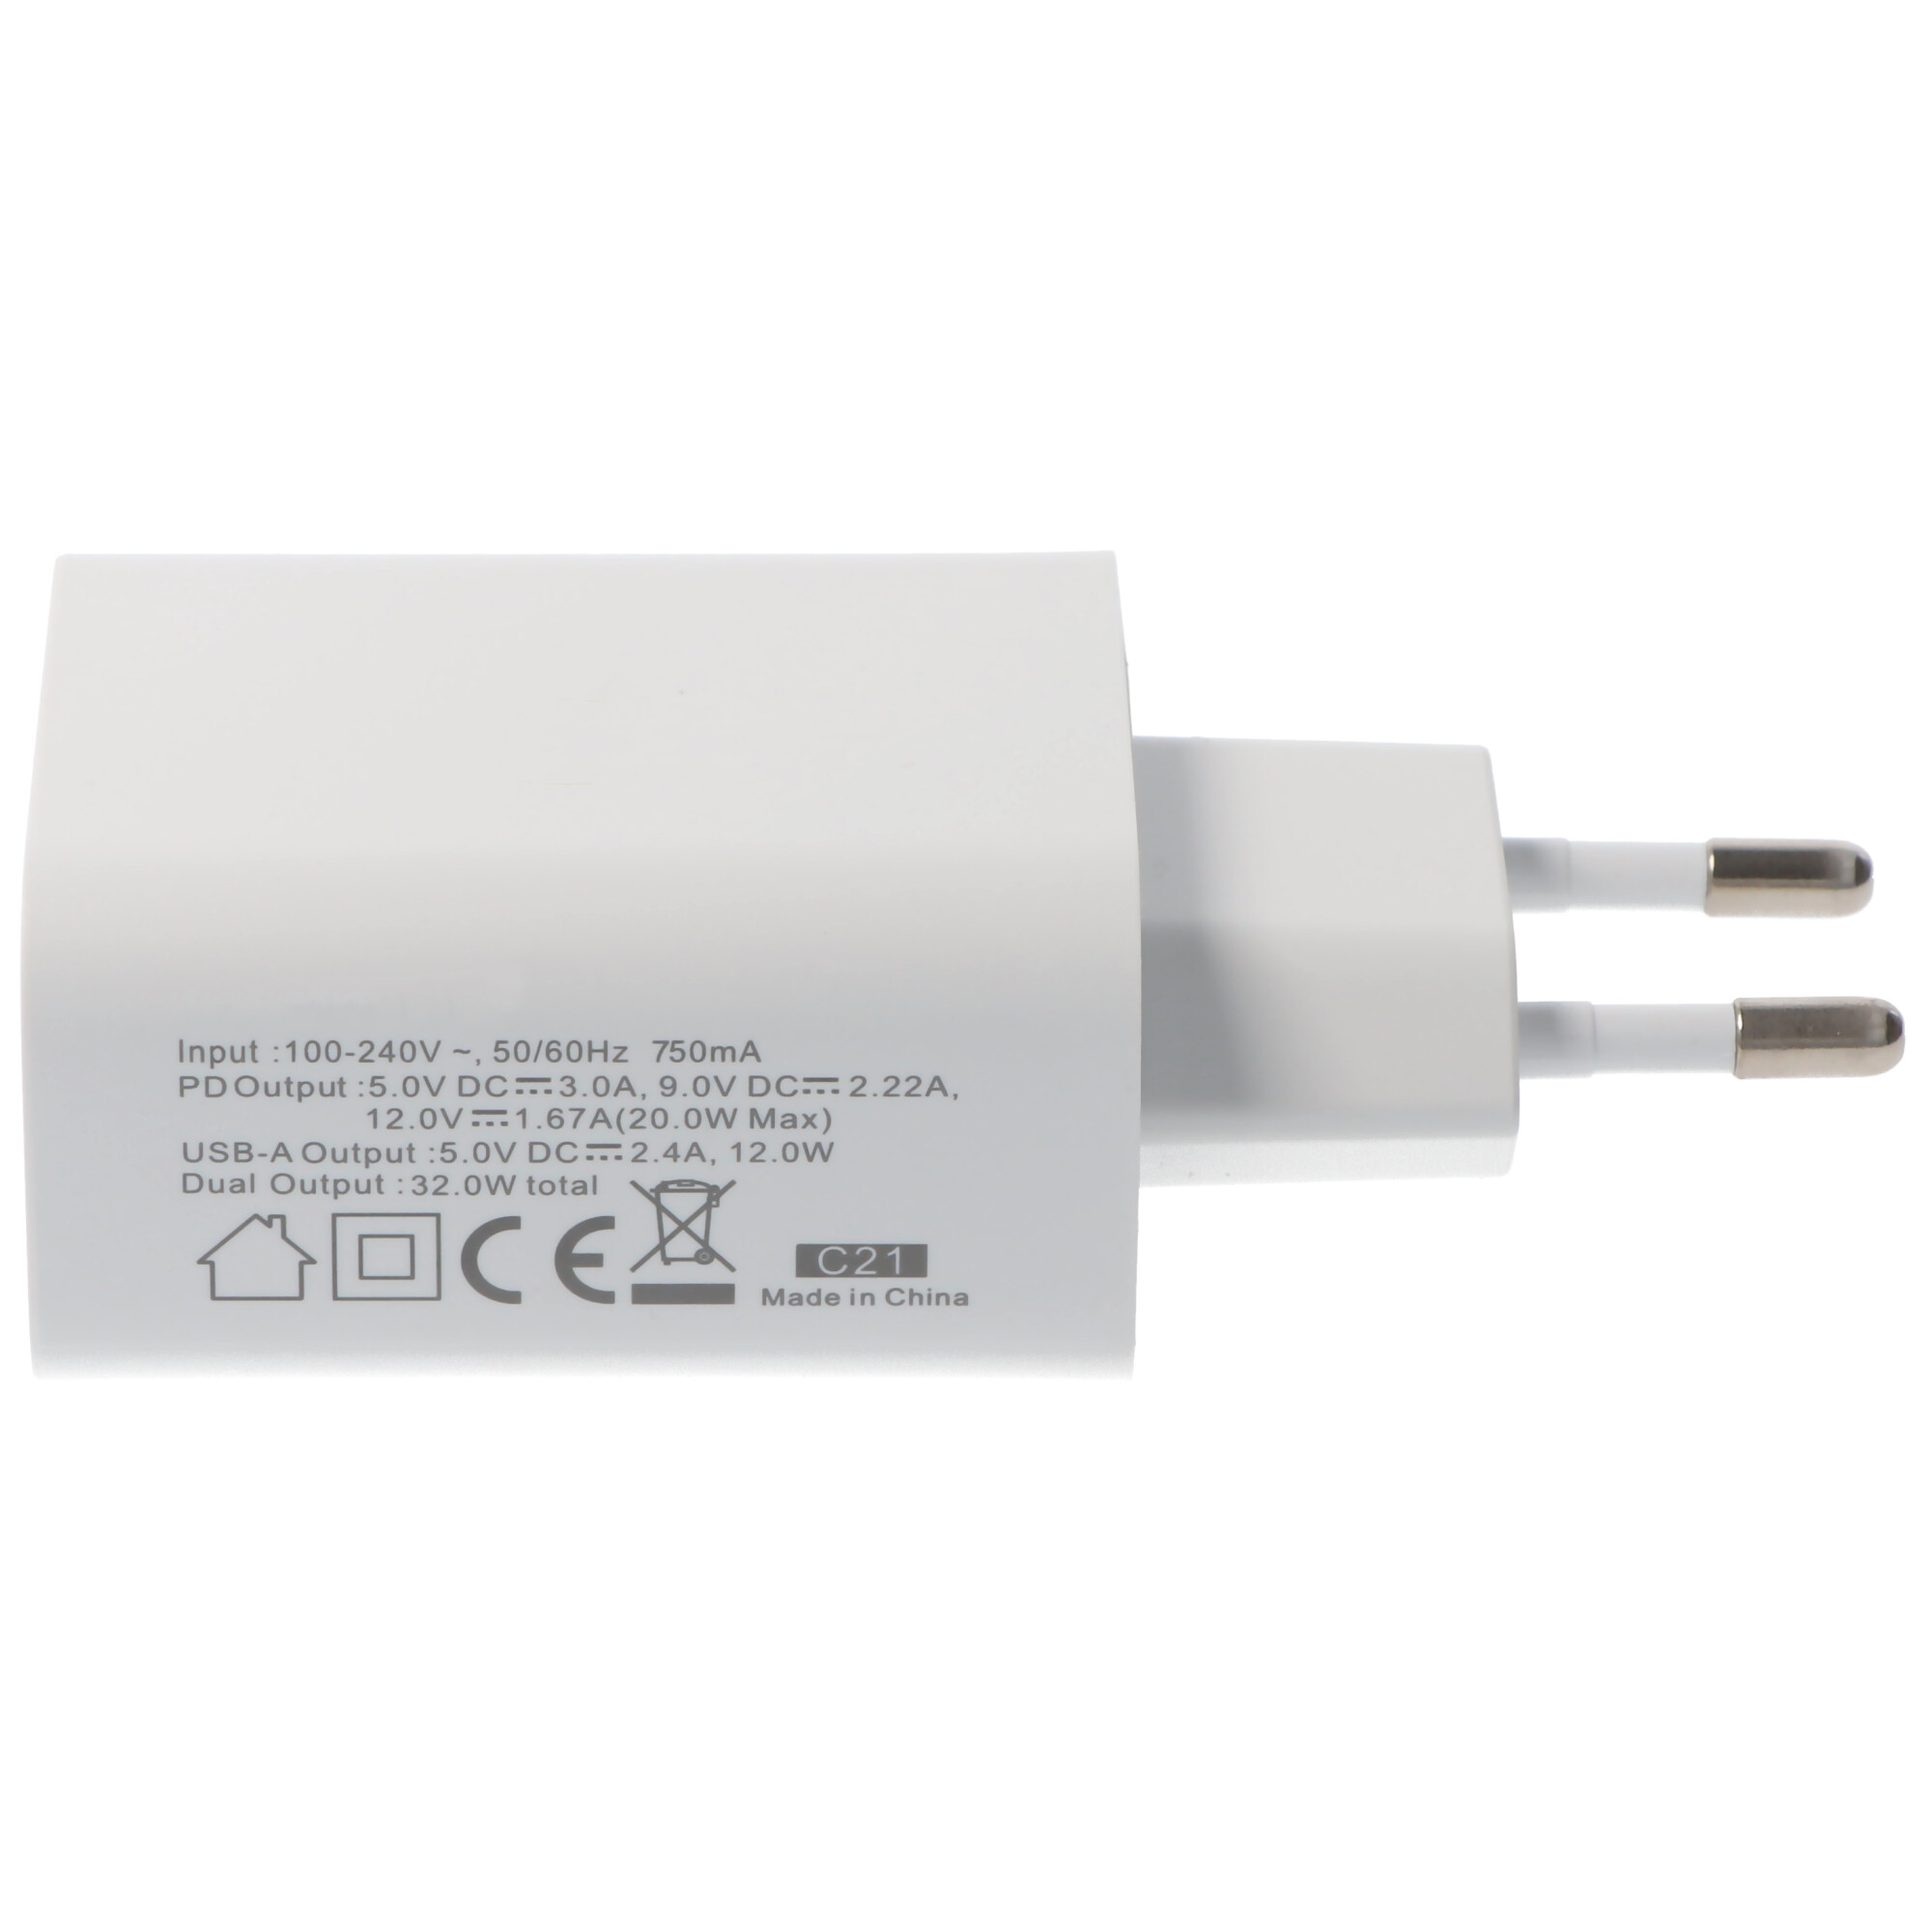 Dual-USB Schnellladegerät USB QC3.0 28W weiß, lädt bis zu 4x schneller als Standard USB-Ladegeräte